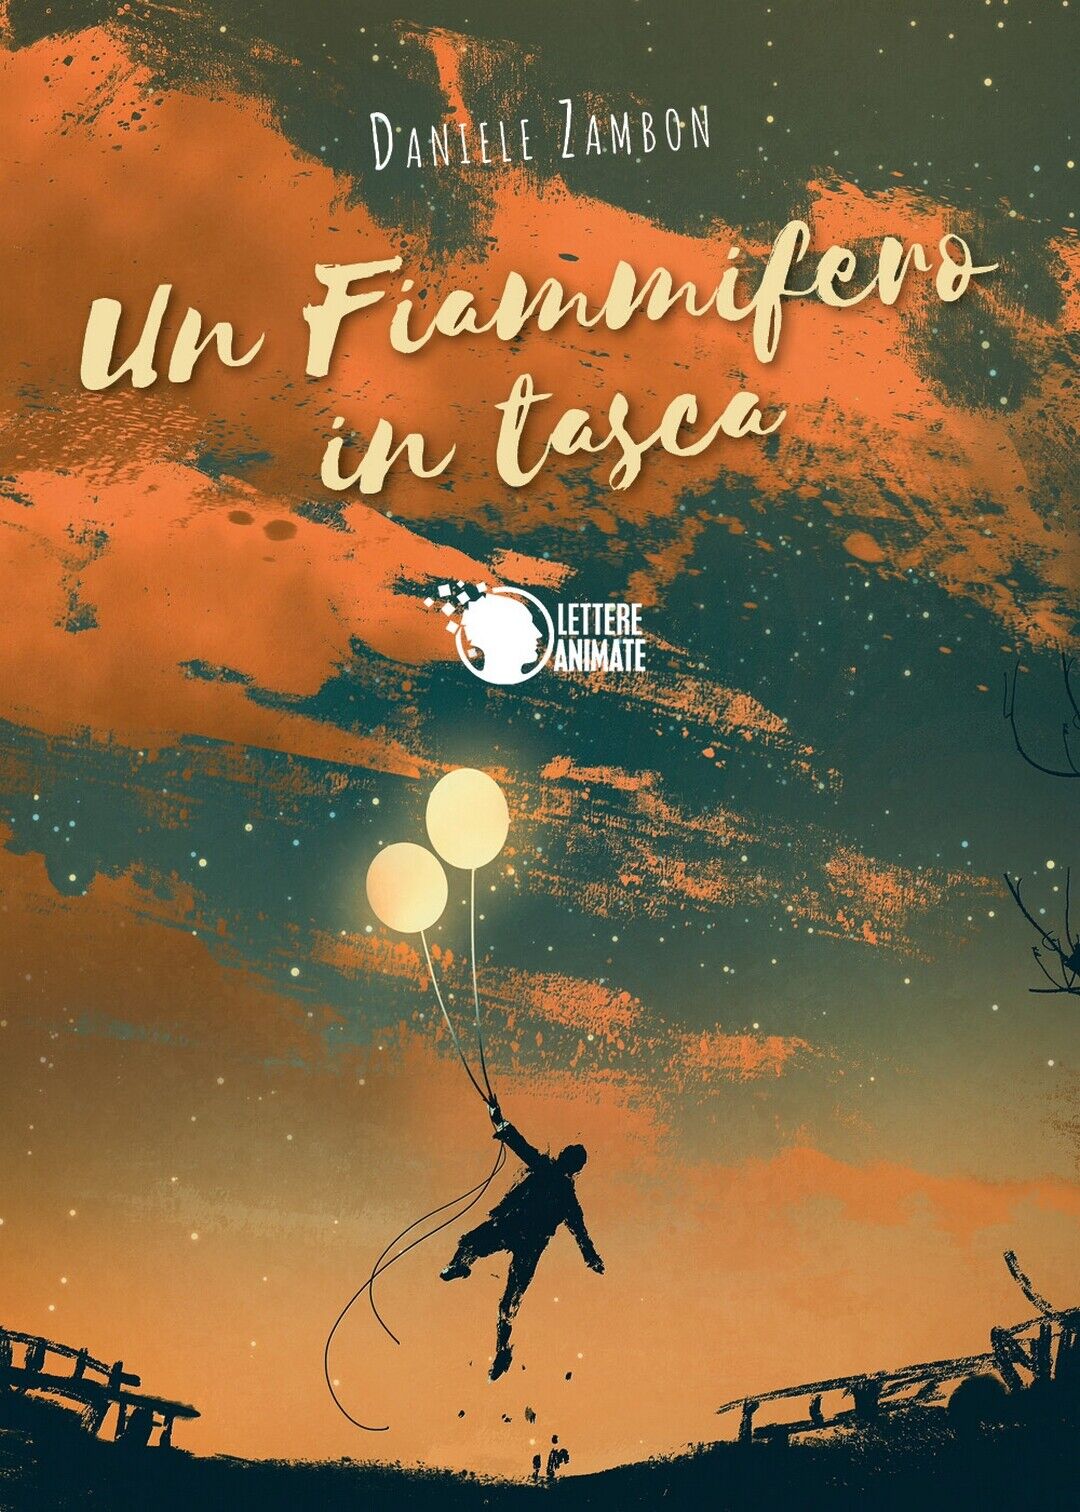 Un fiammifero in tasca  di Daniele Zambon,  2019,  Lettere Animate Editore